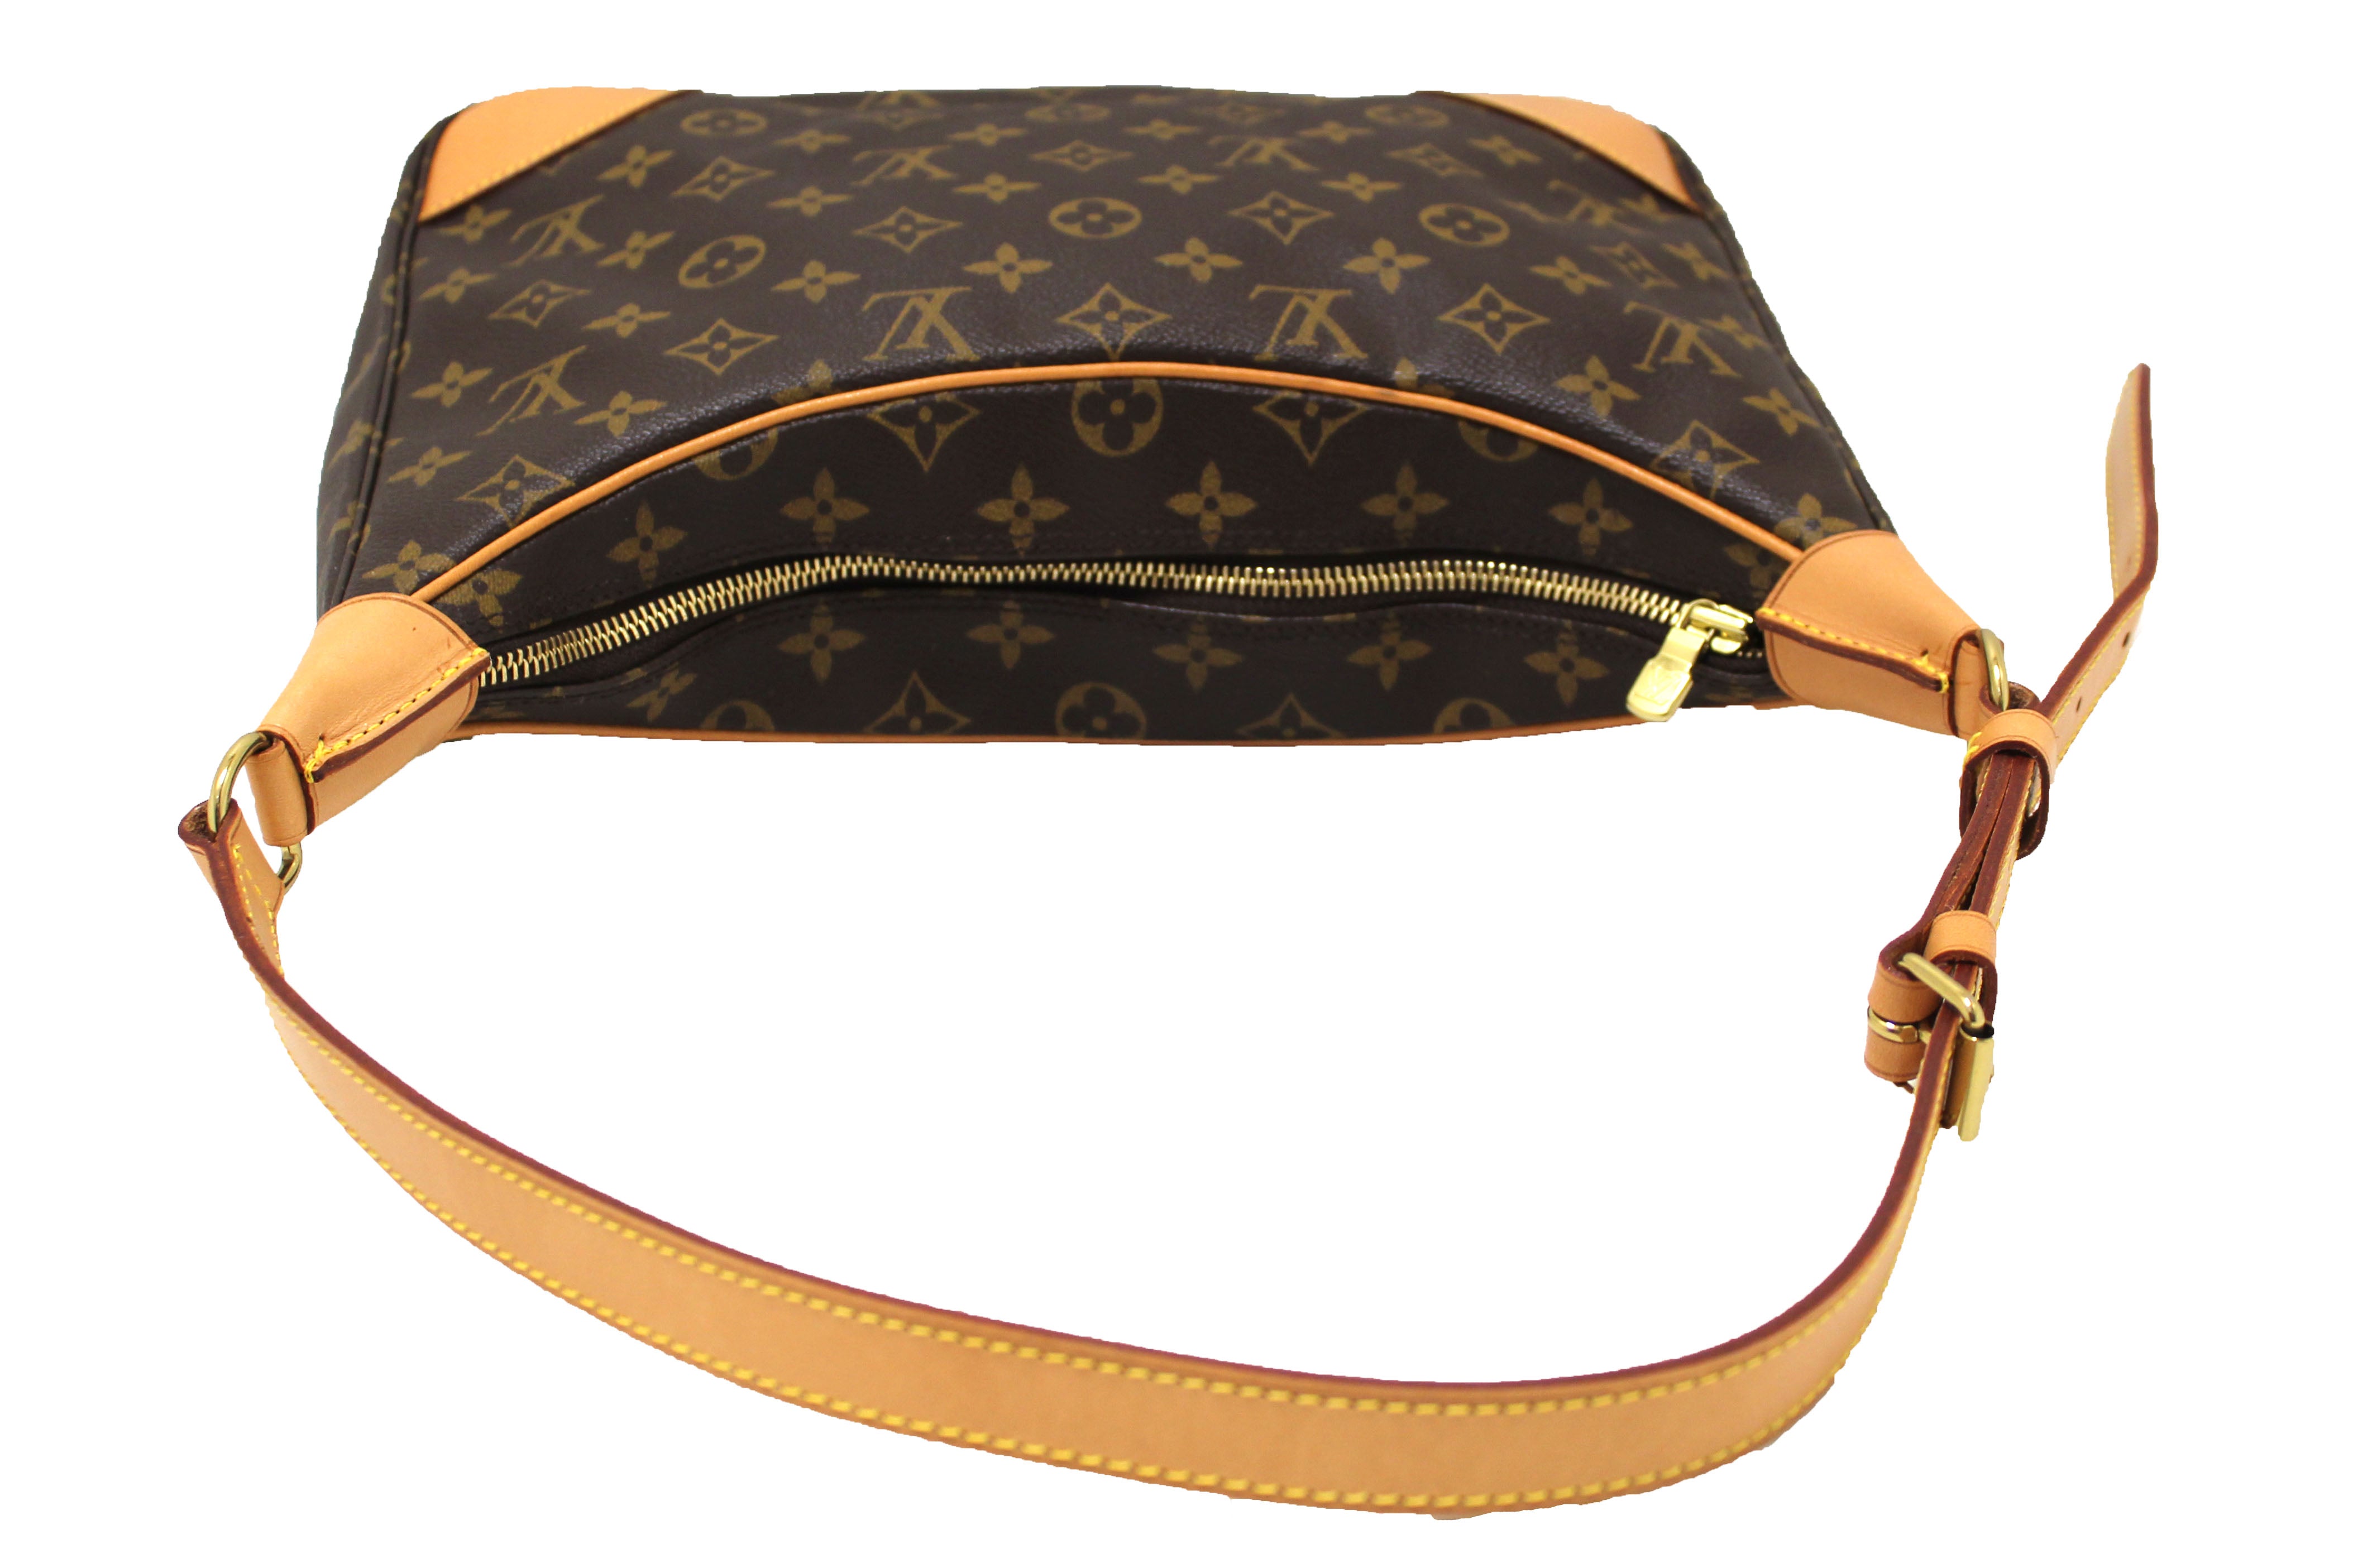 Authentic Louis Vuitton Classic Monogram Boulogne 30 Shoulder Bag